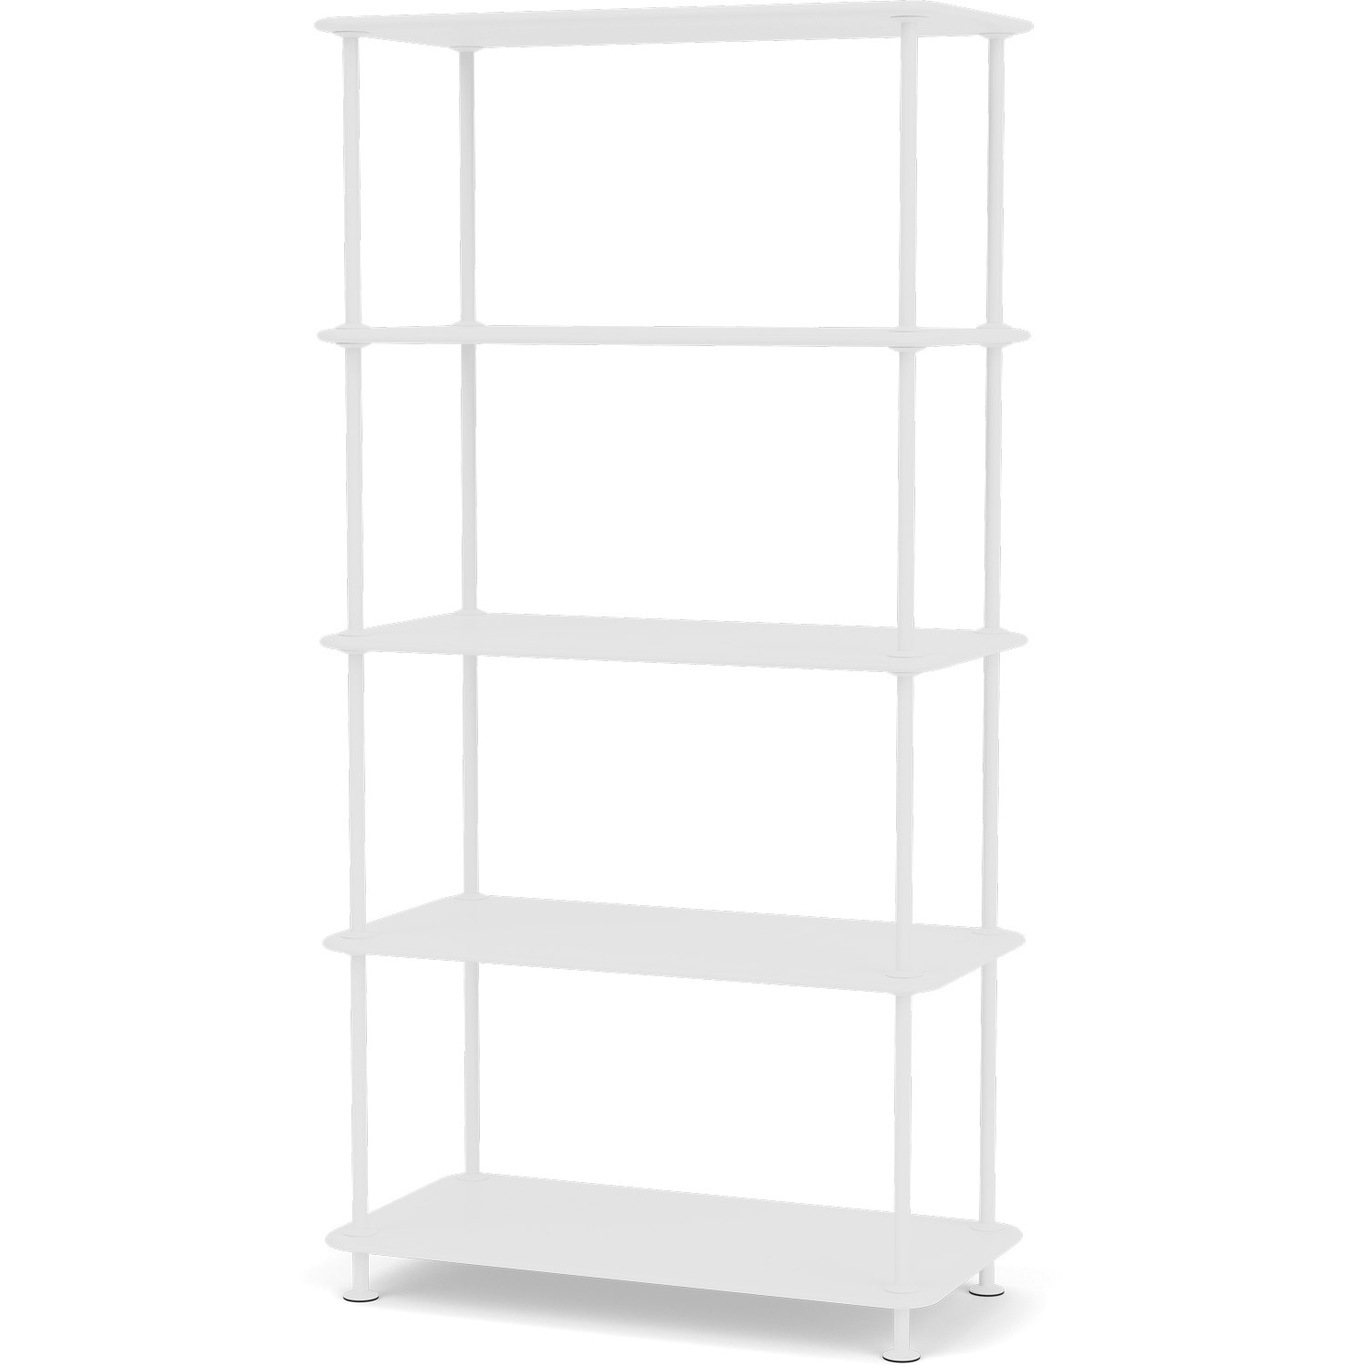 Free Shelf 400000, New White